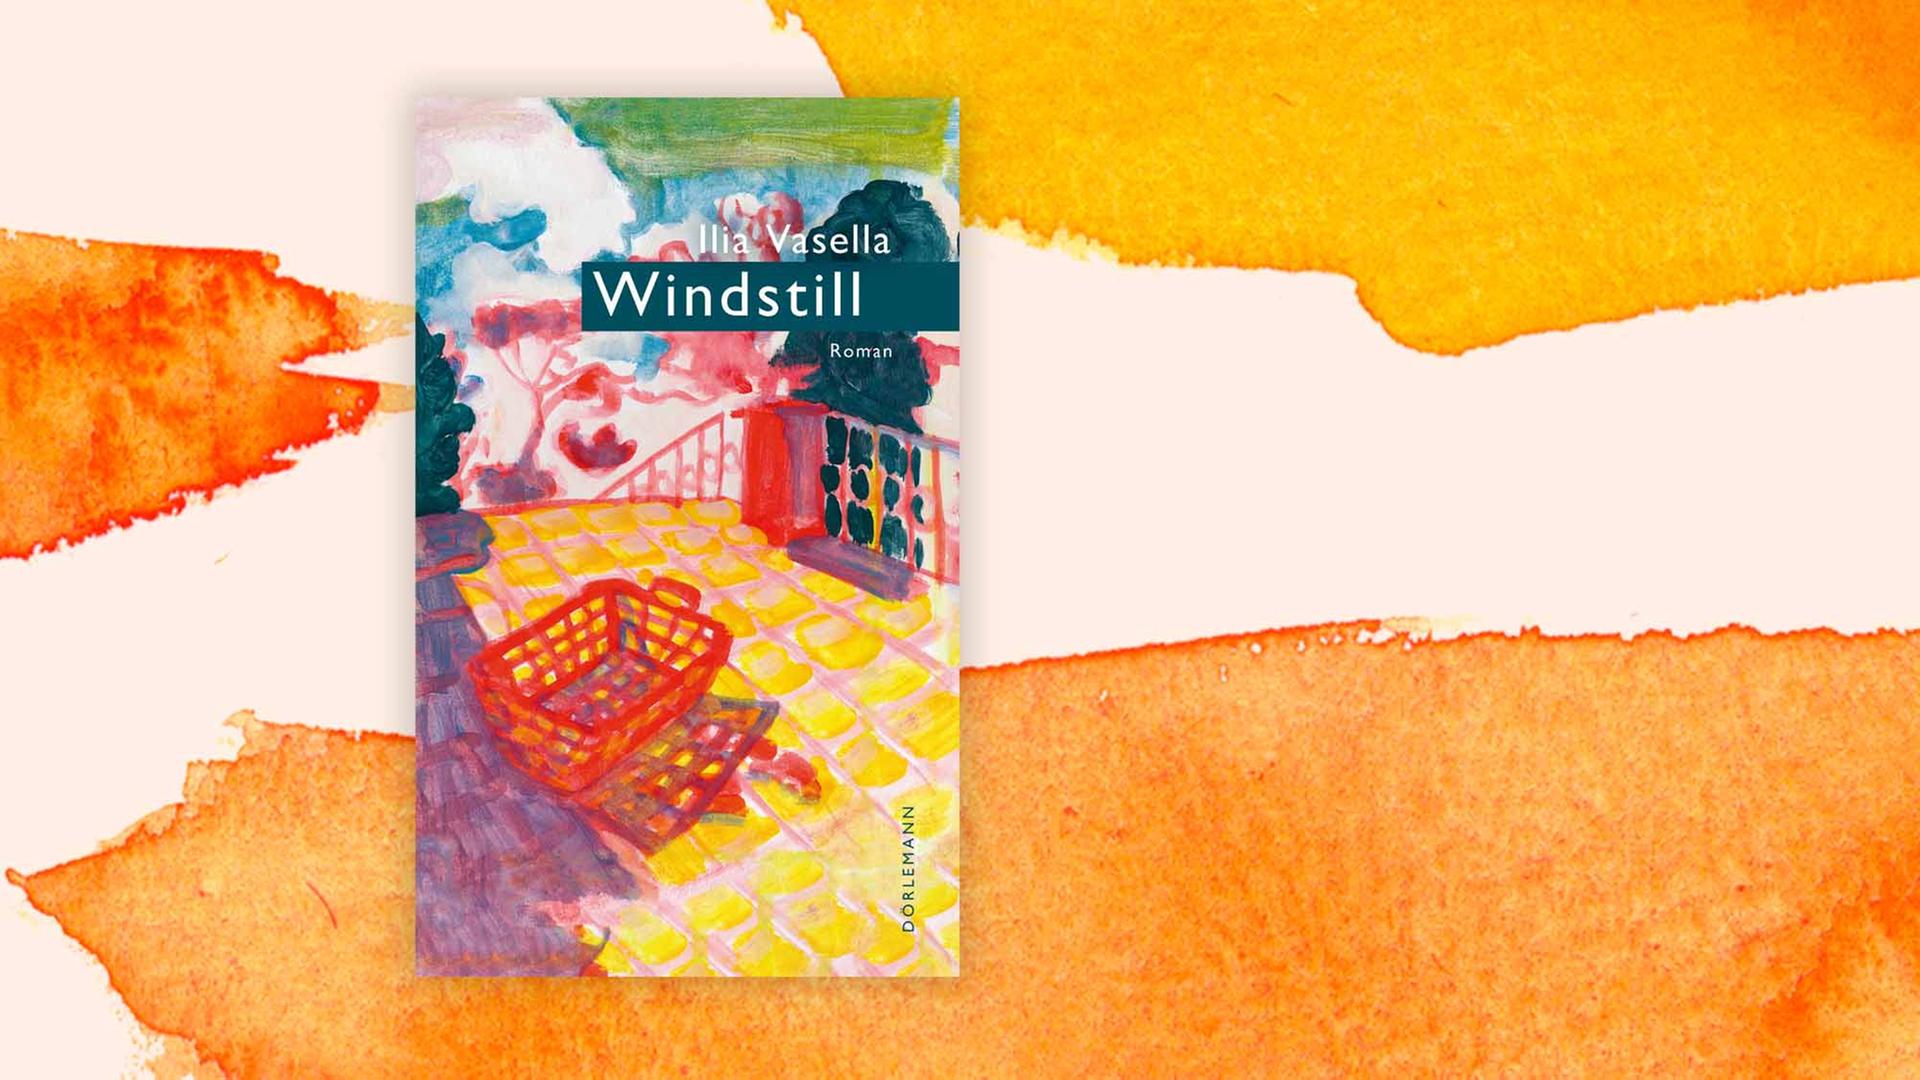 Cover: Ilia Vasella "Windstill", Roman